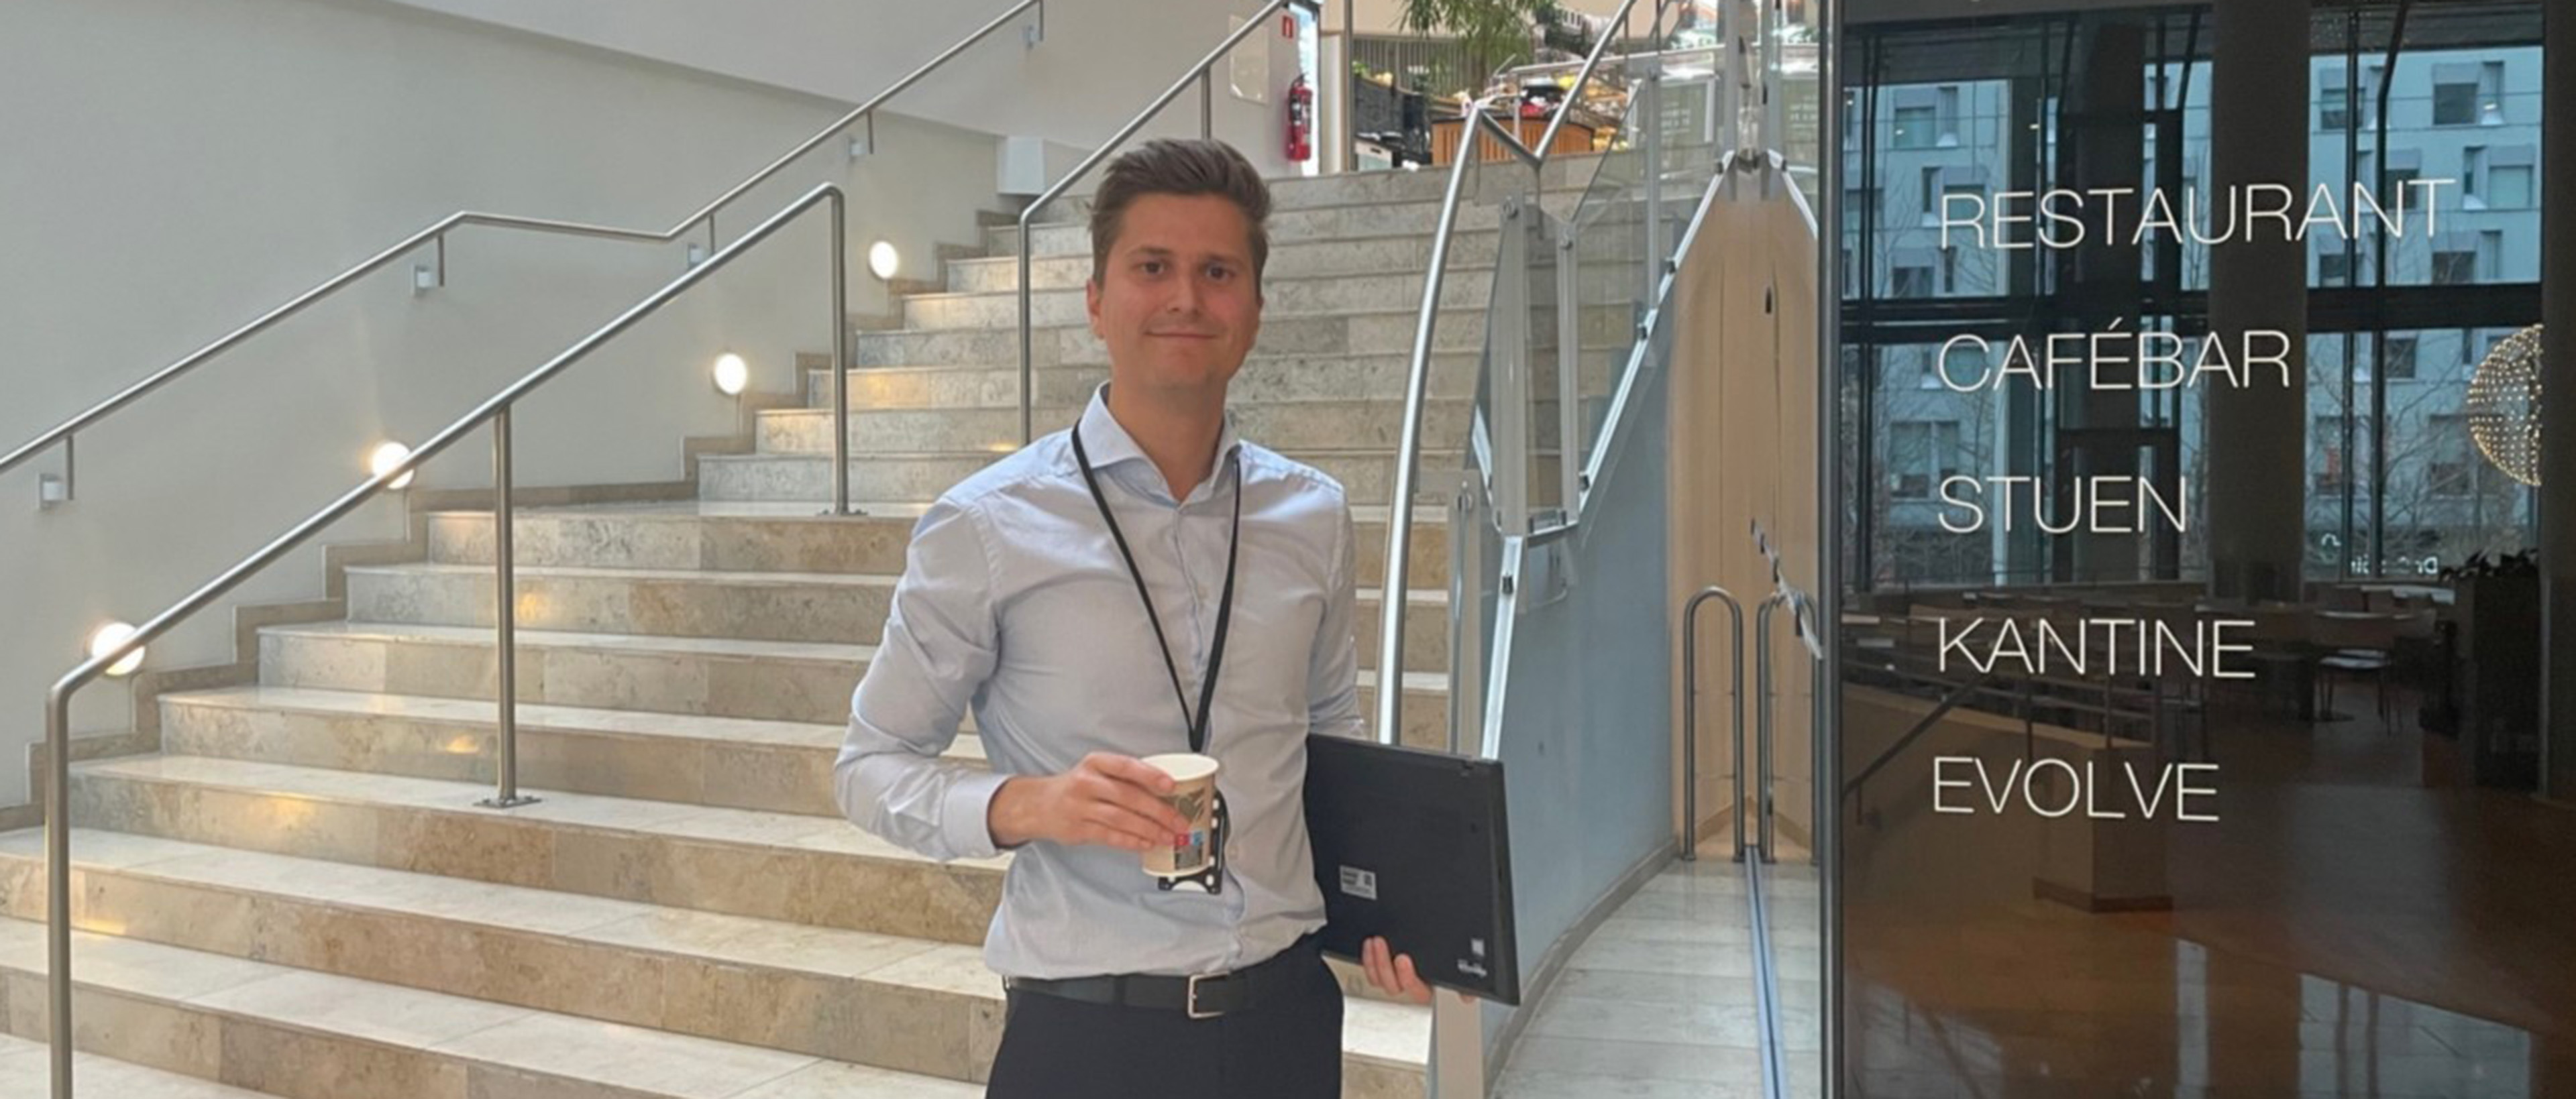 Morten Marcelius Skordal på Oslo-kontoret med PC og kaffekopp i hendene